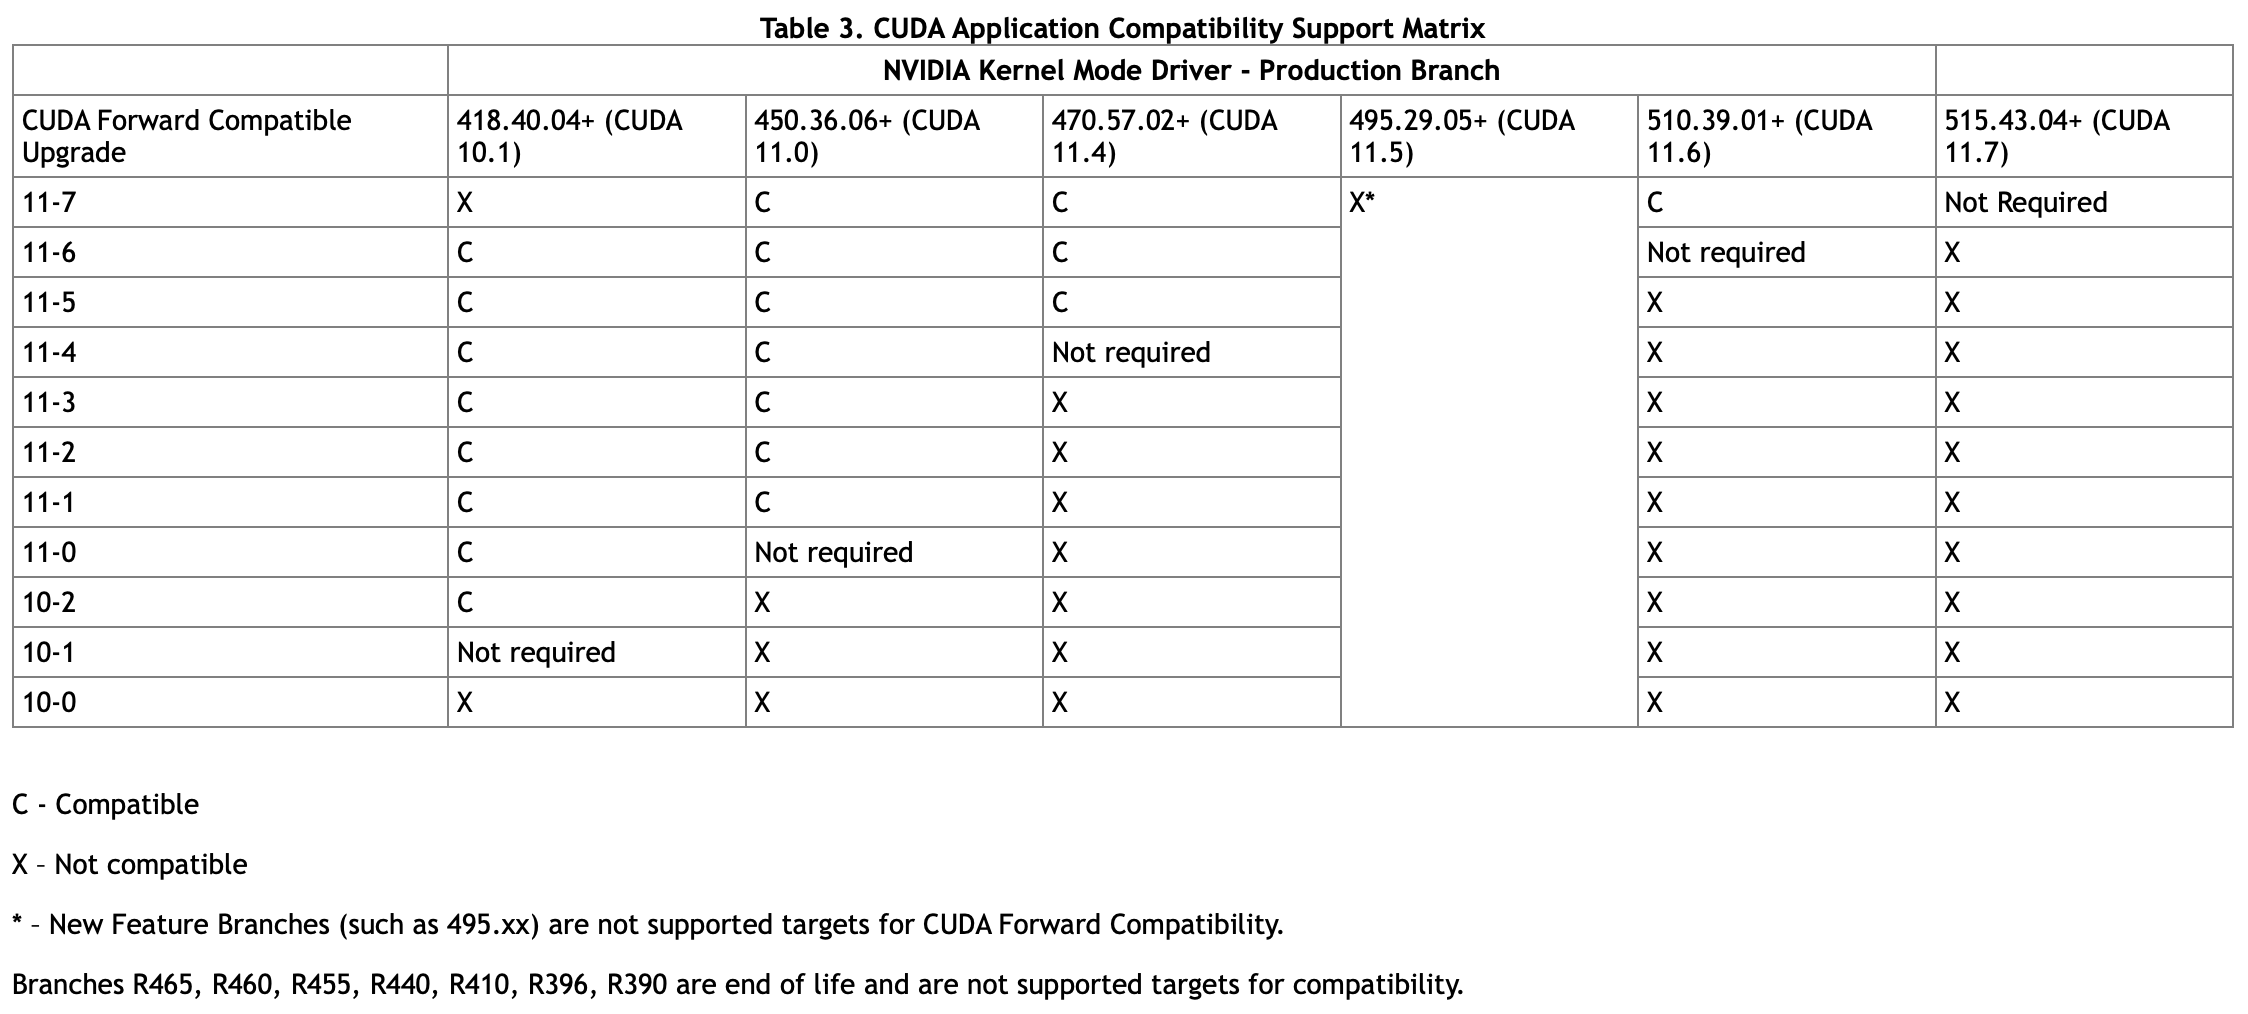 CUDA Application Compatibility Support Matrix